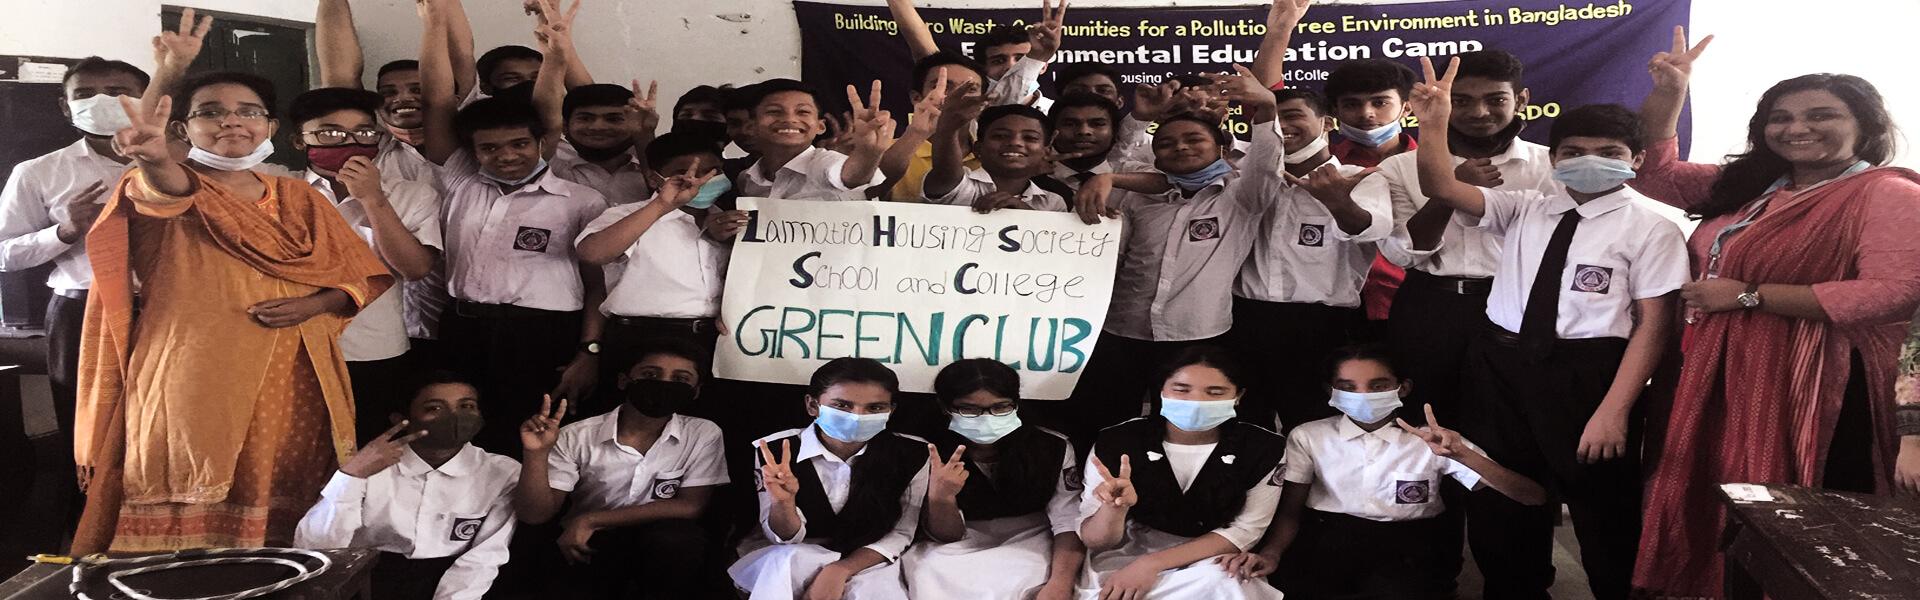 Environmental Education Camp at Dhaka